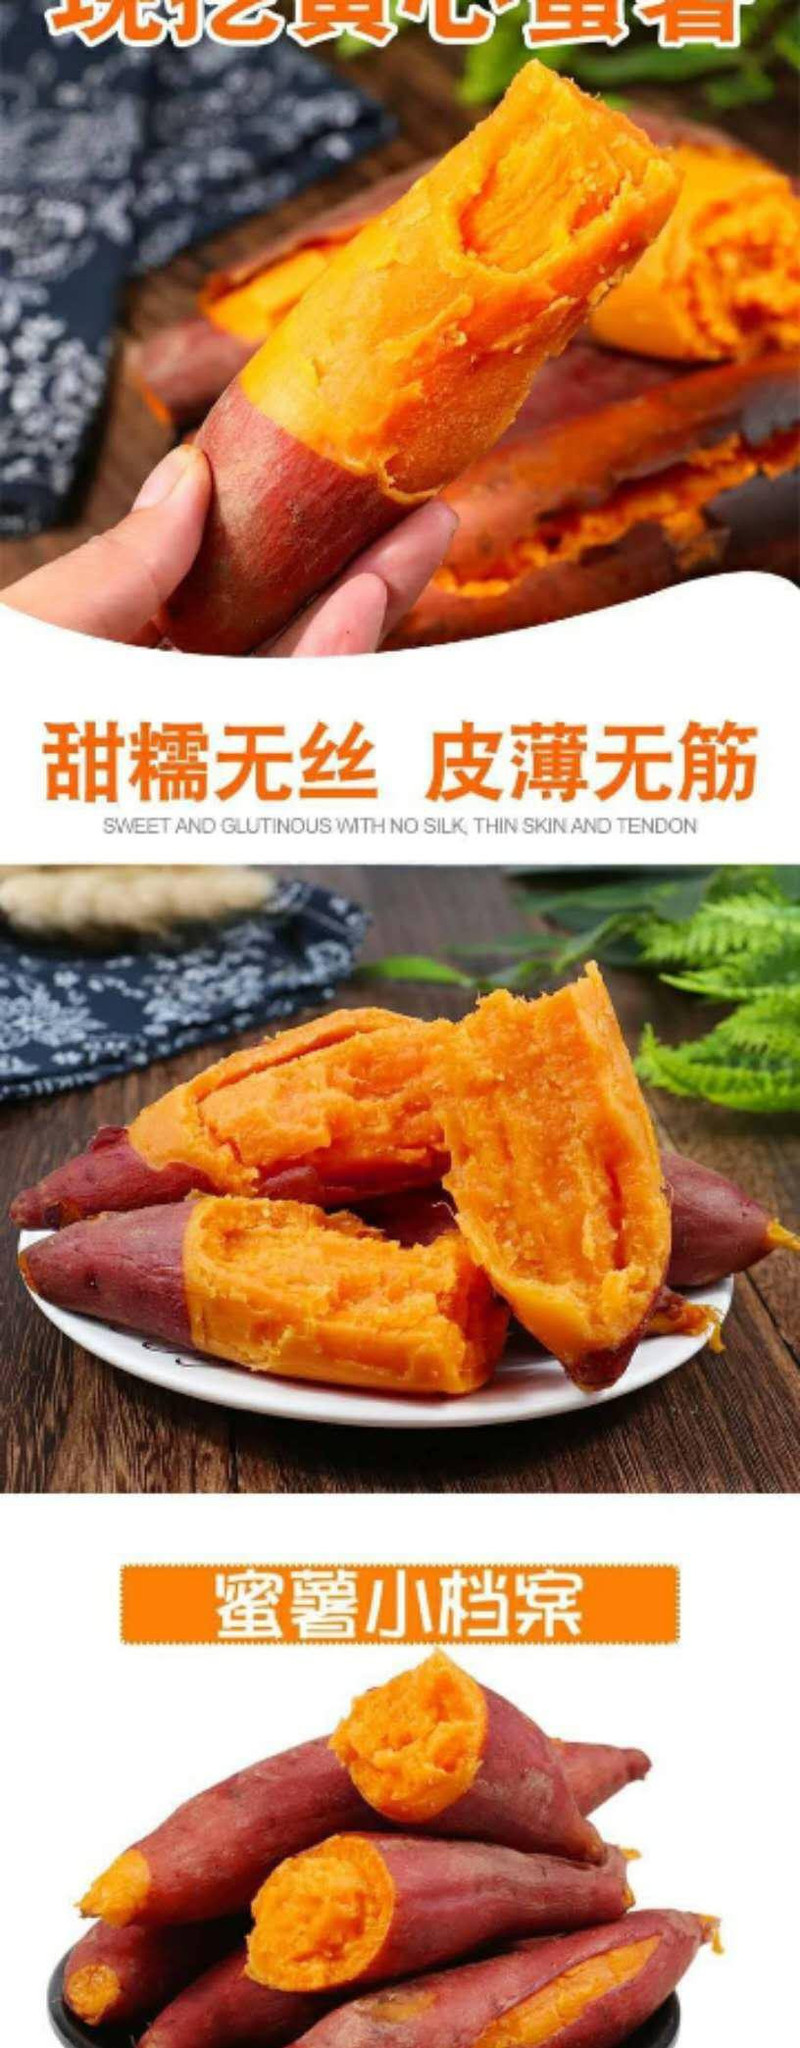 江西寻乌红蜜薯4斤装